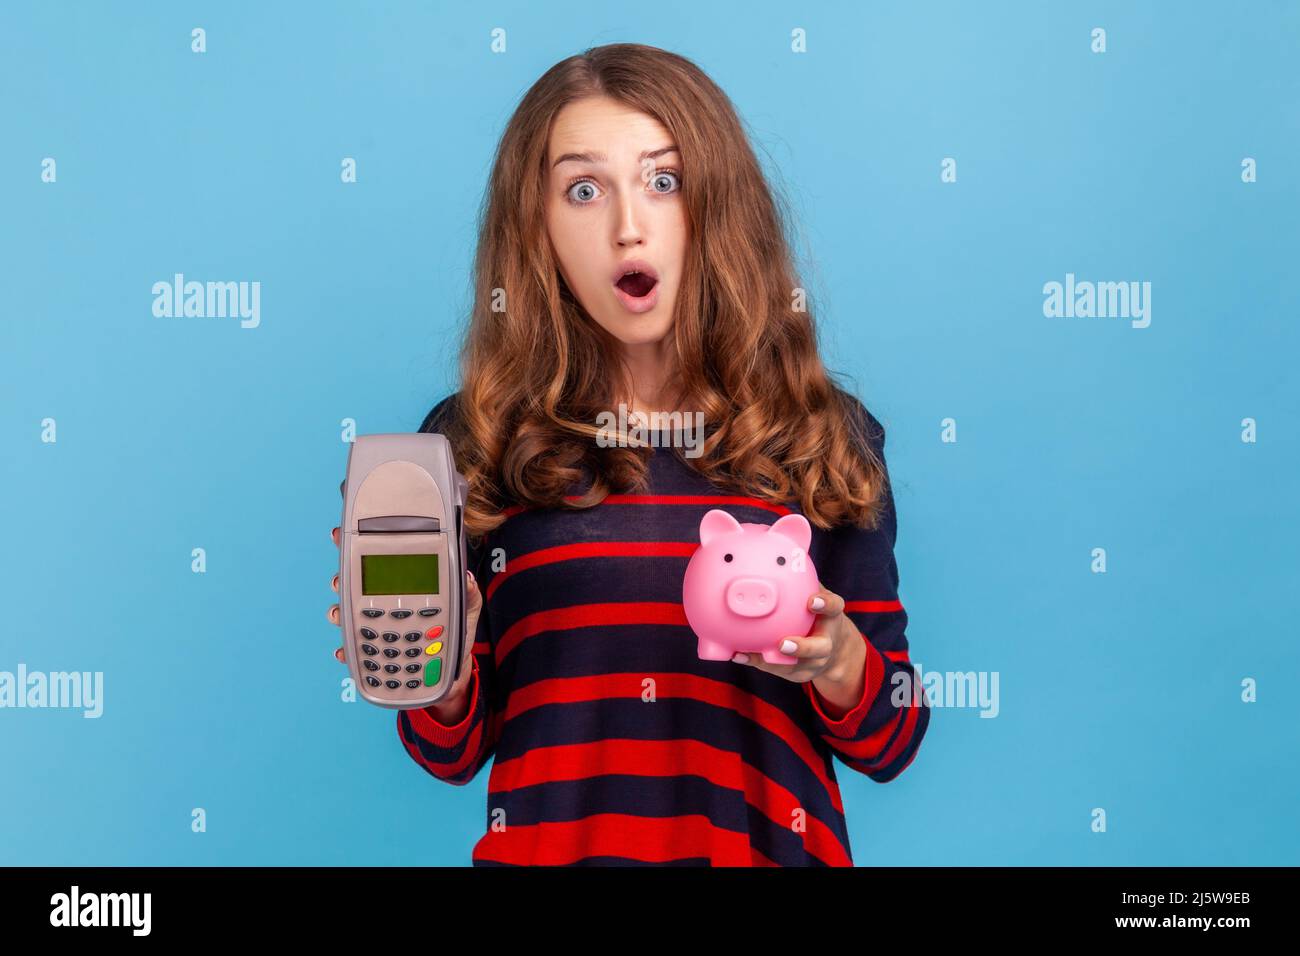 Die staunende Frau, die einen gestreiften Pullover im lässigen Stil trägt, POS-Zahlungsterminal und Smartphone mit leerem Bildschirm zeigt, hat den Ausdruck überrascht. Innenaufnahme des Studios isoliert auf blauem Hintergrund. Stockfoto